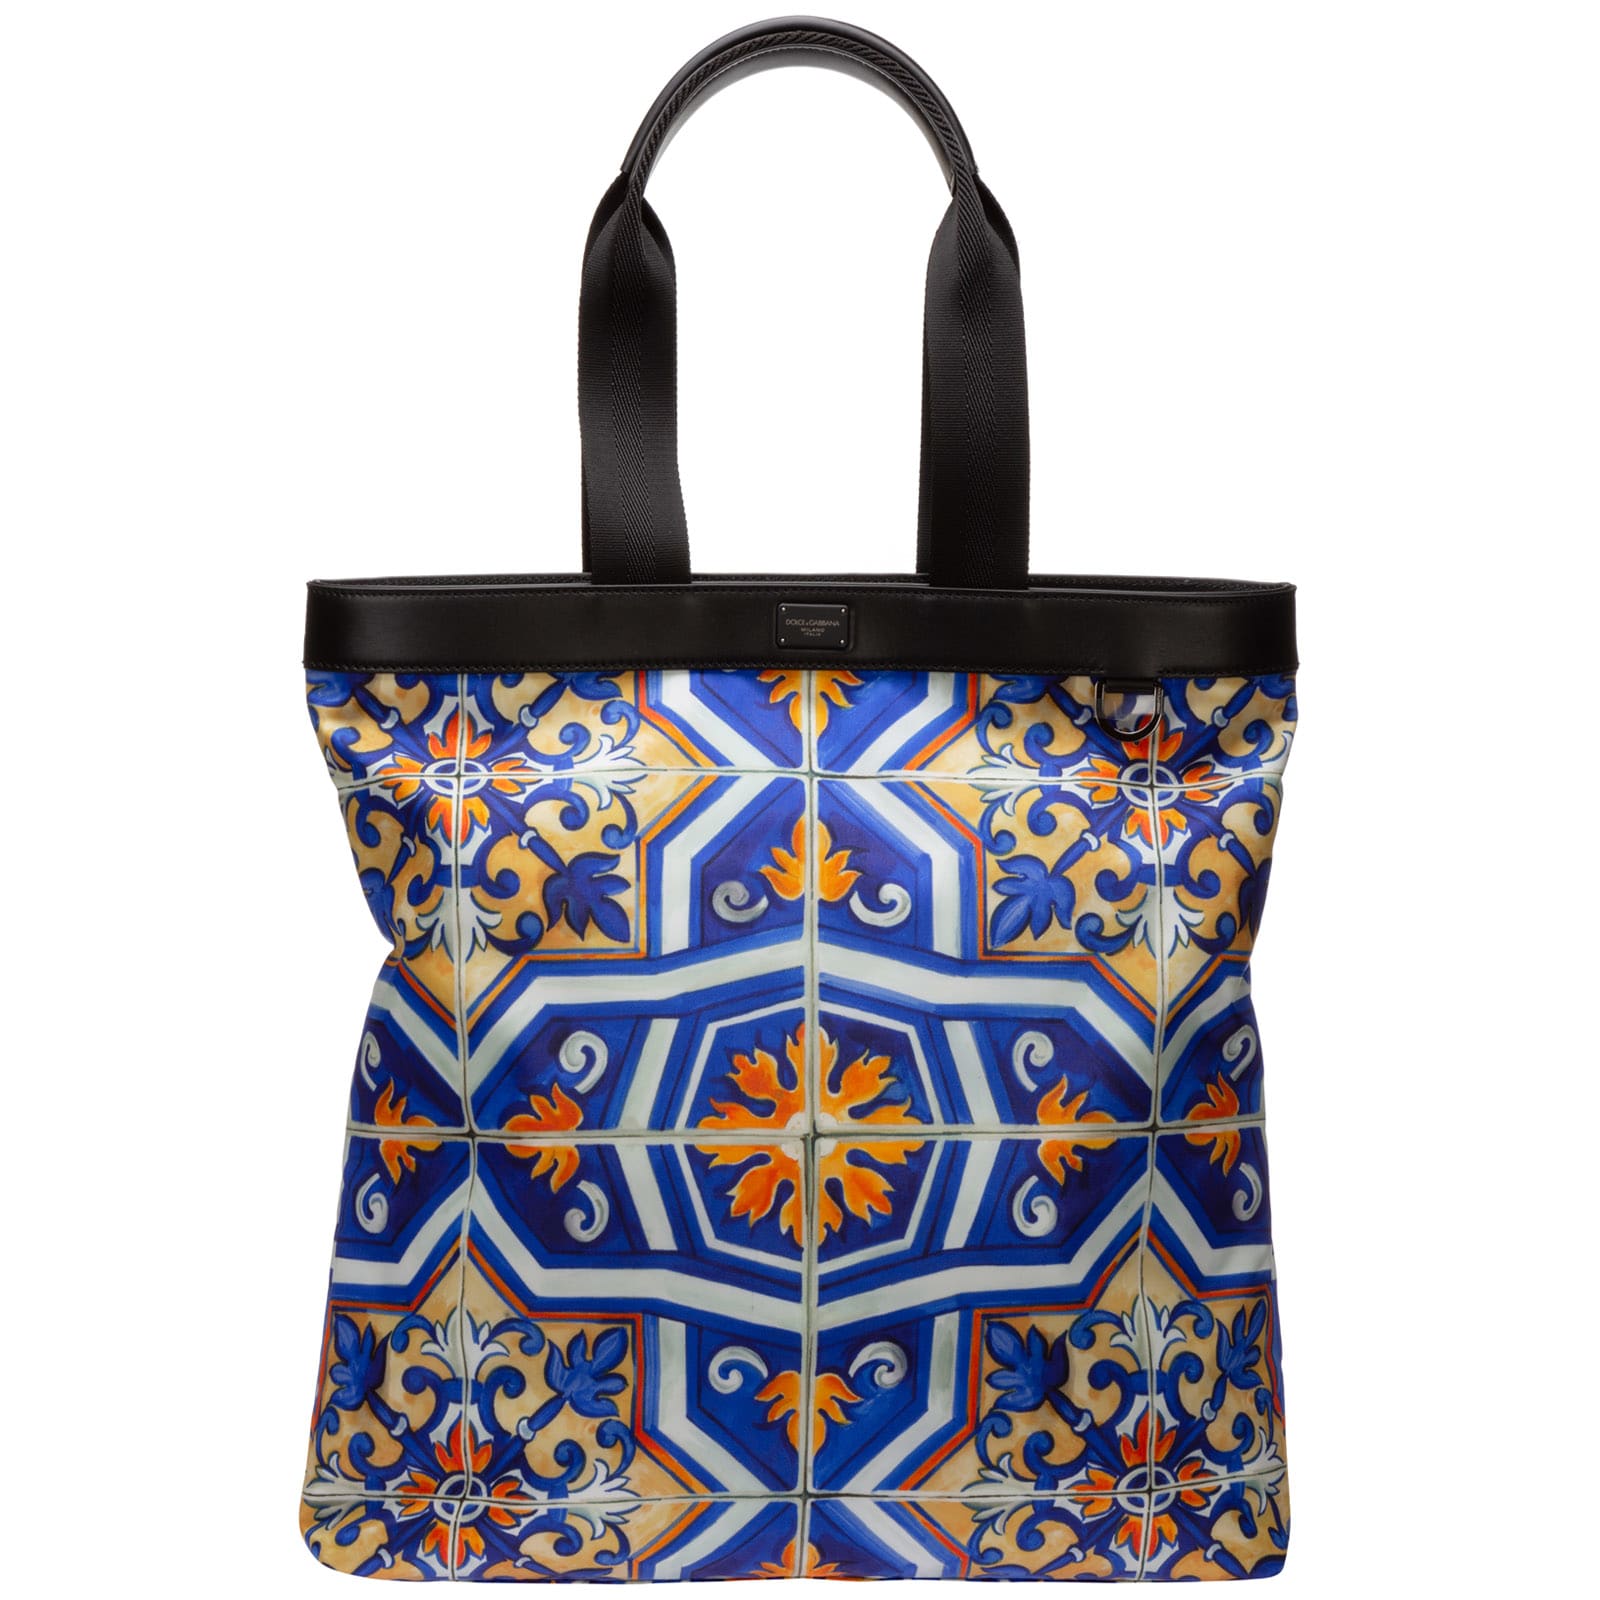 Dolce & Gabbana Sicily 62 Handbags In Blu